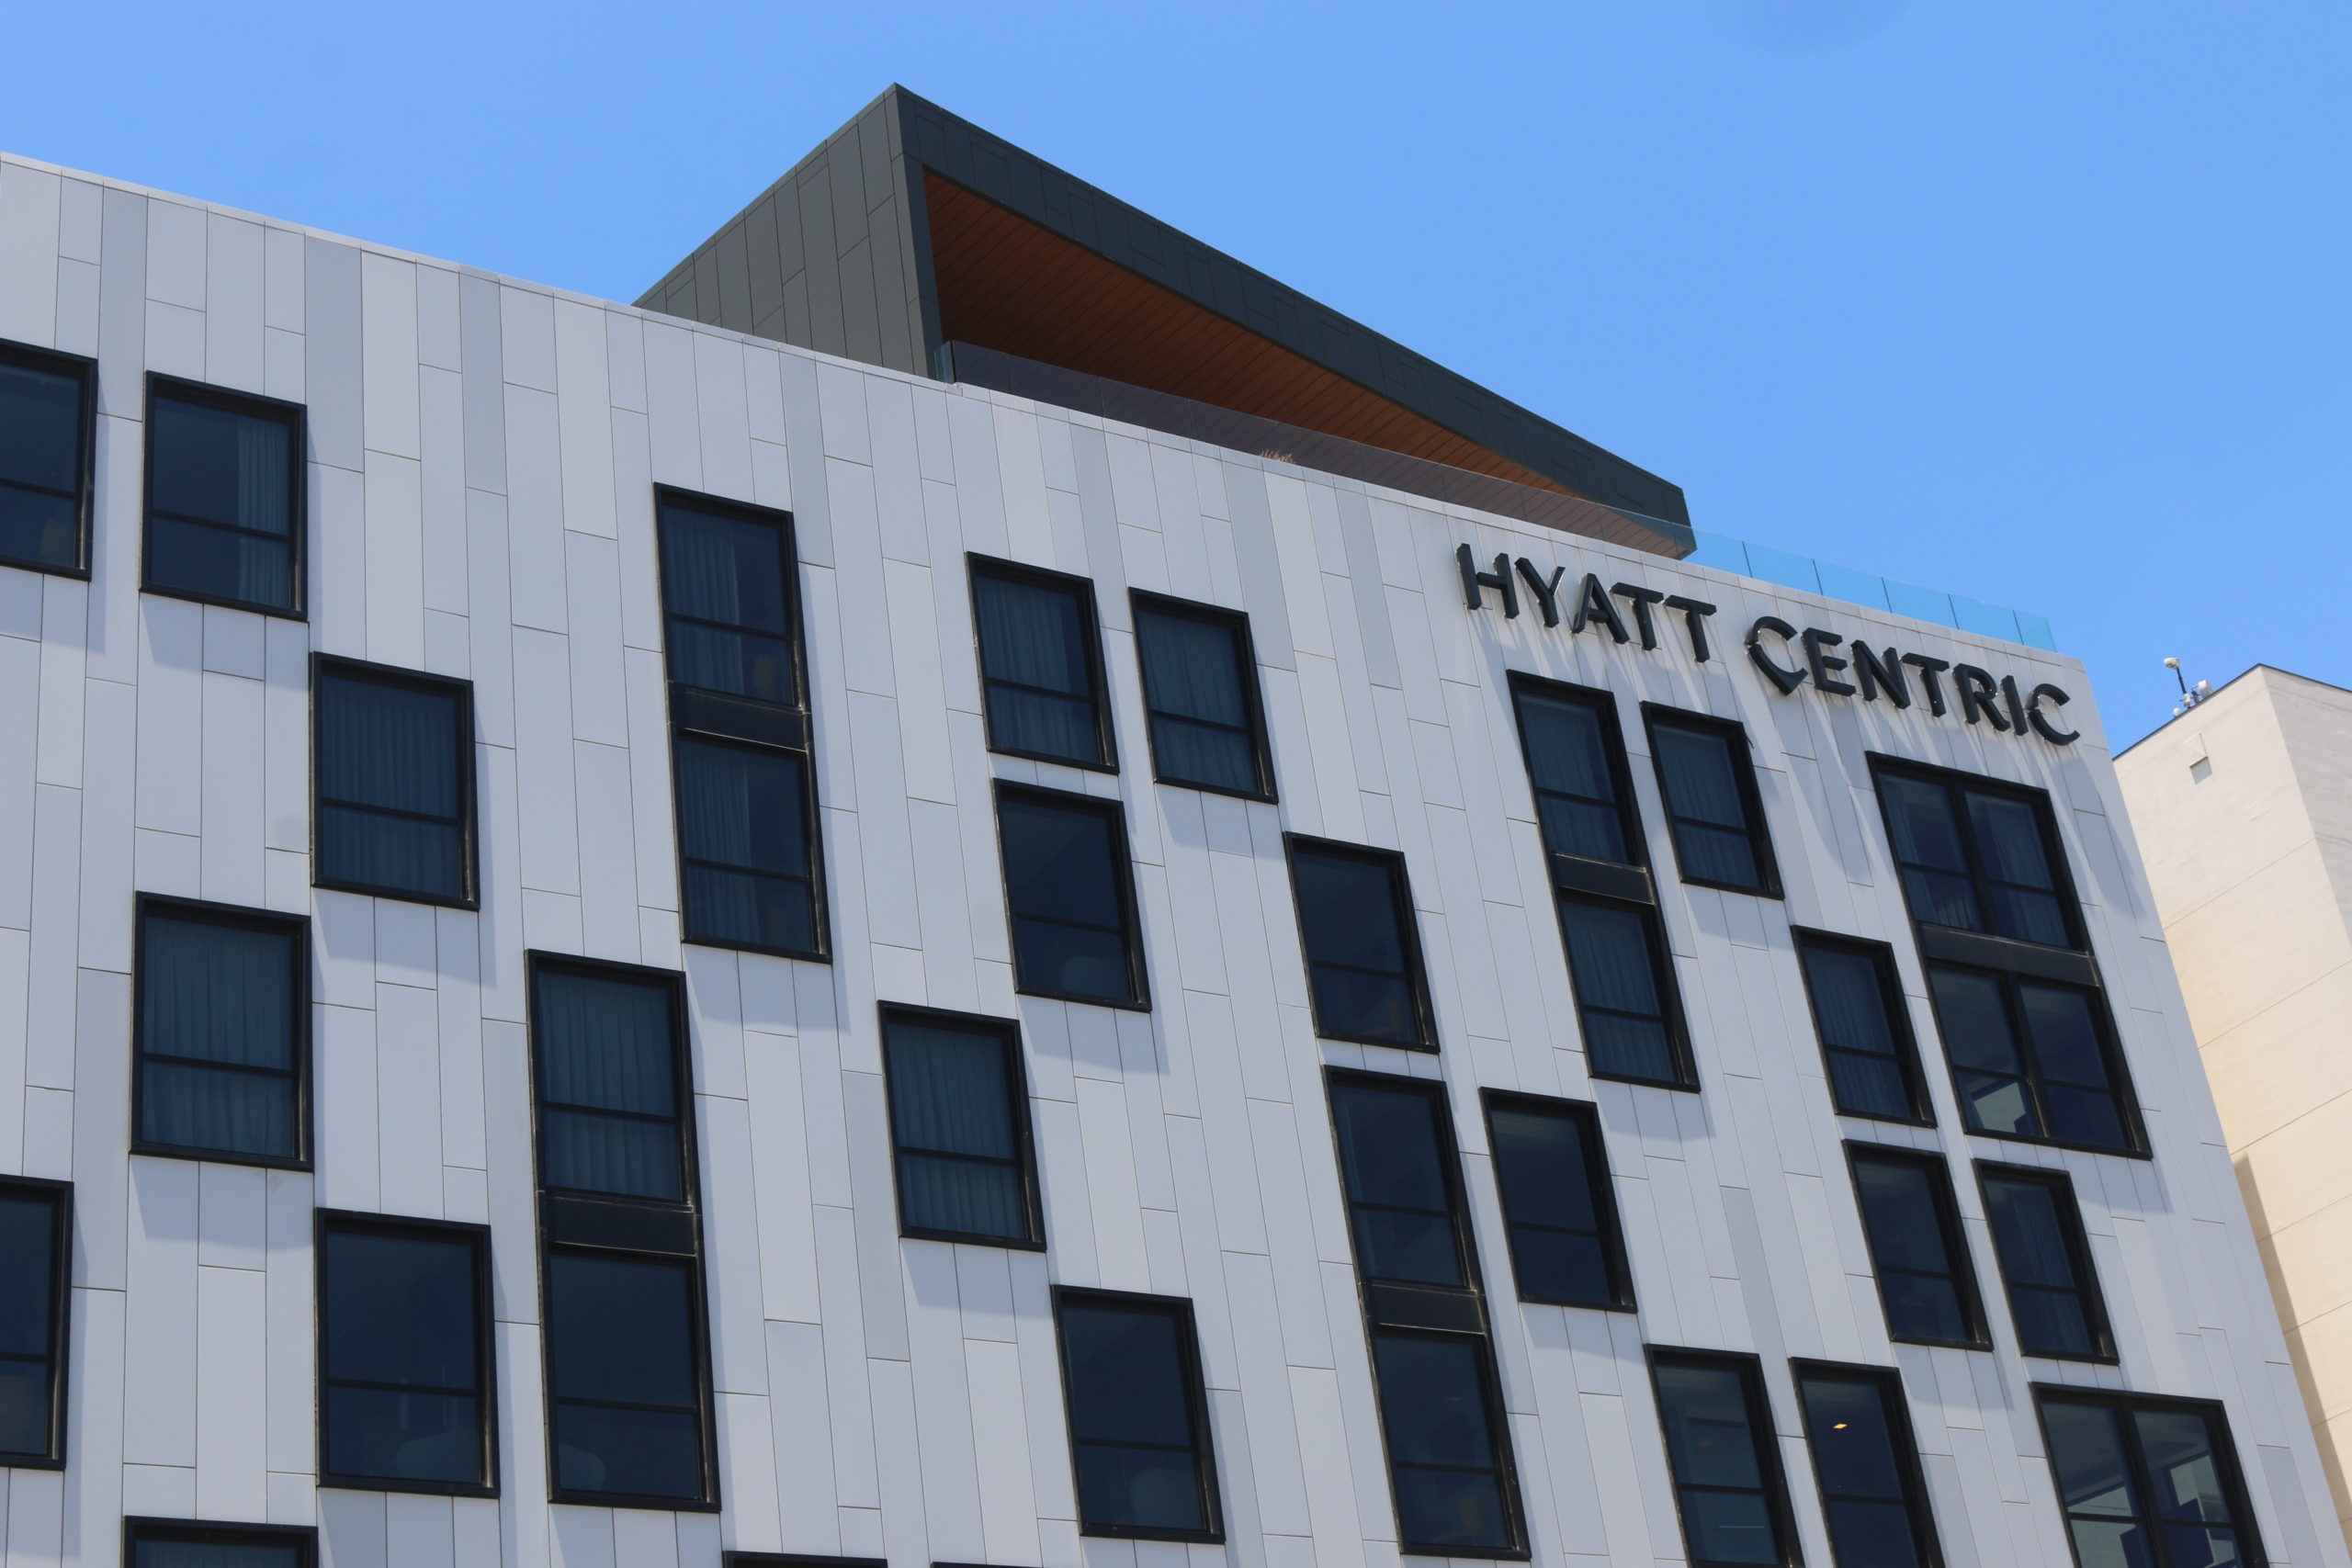 Hyatt Centric Memphis